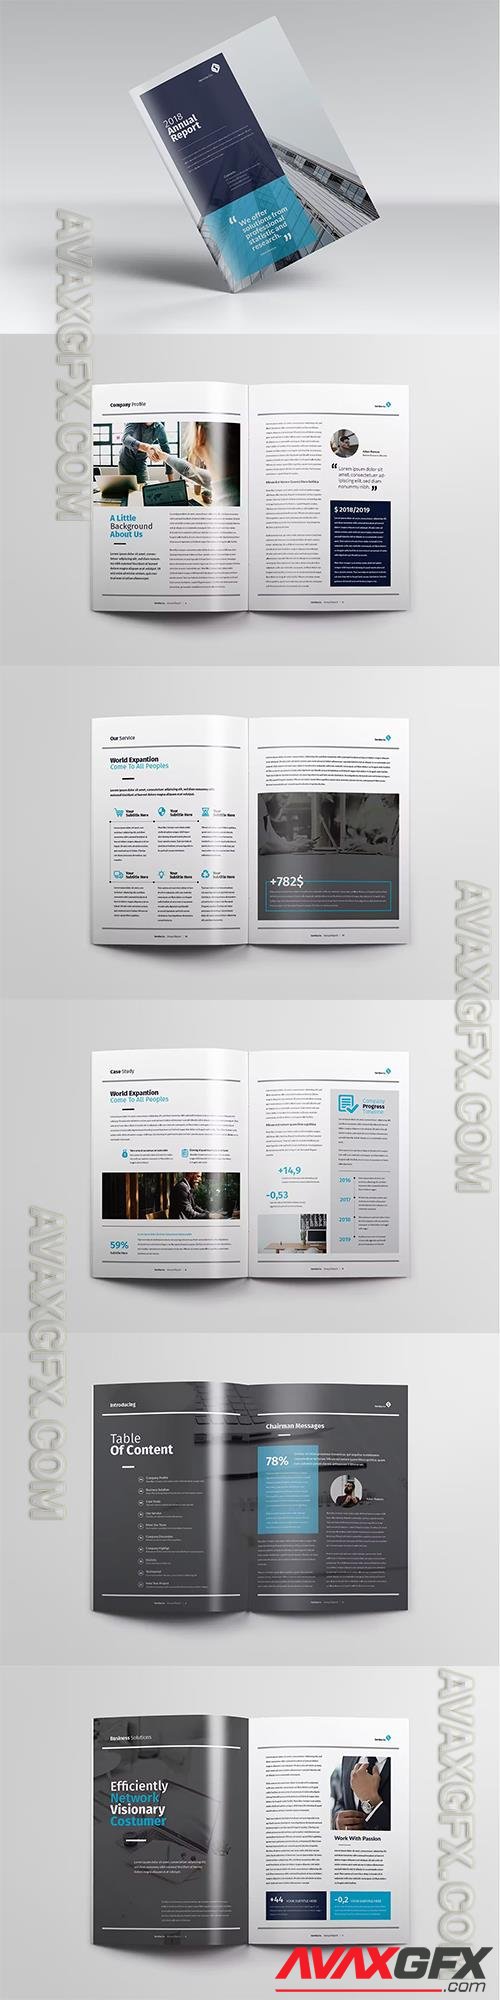 Servina Vol.5 - Corporate Brochure 9N6ZETN